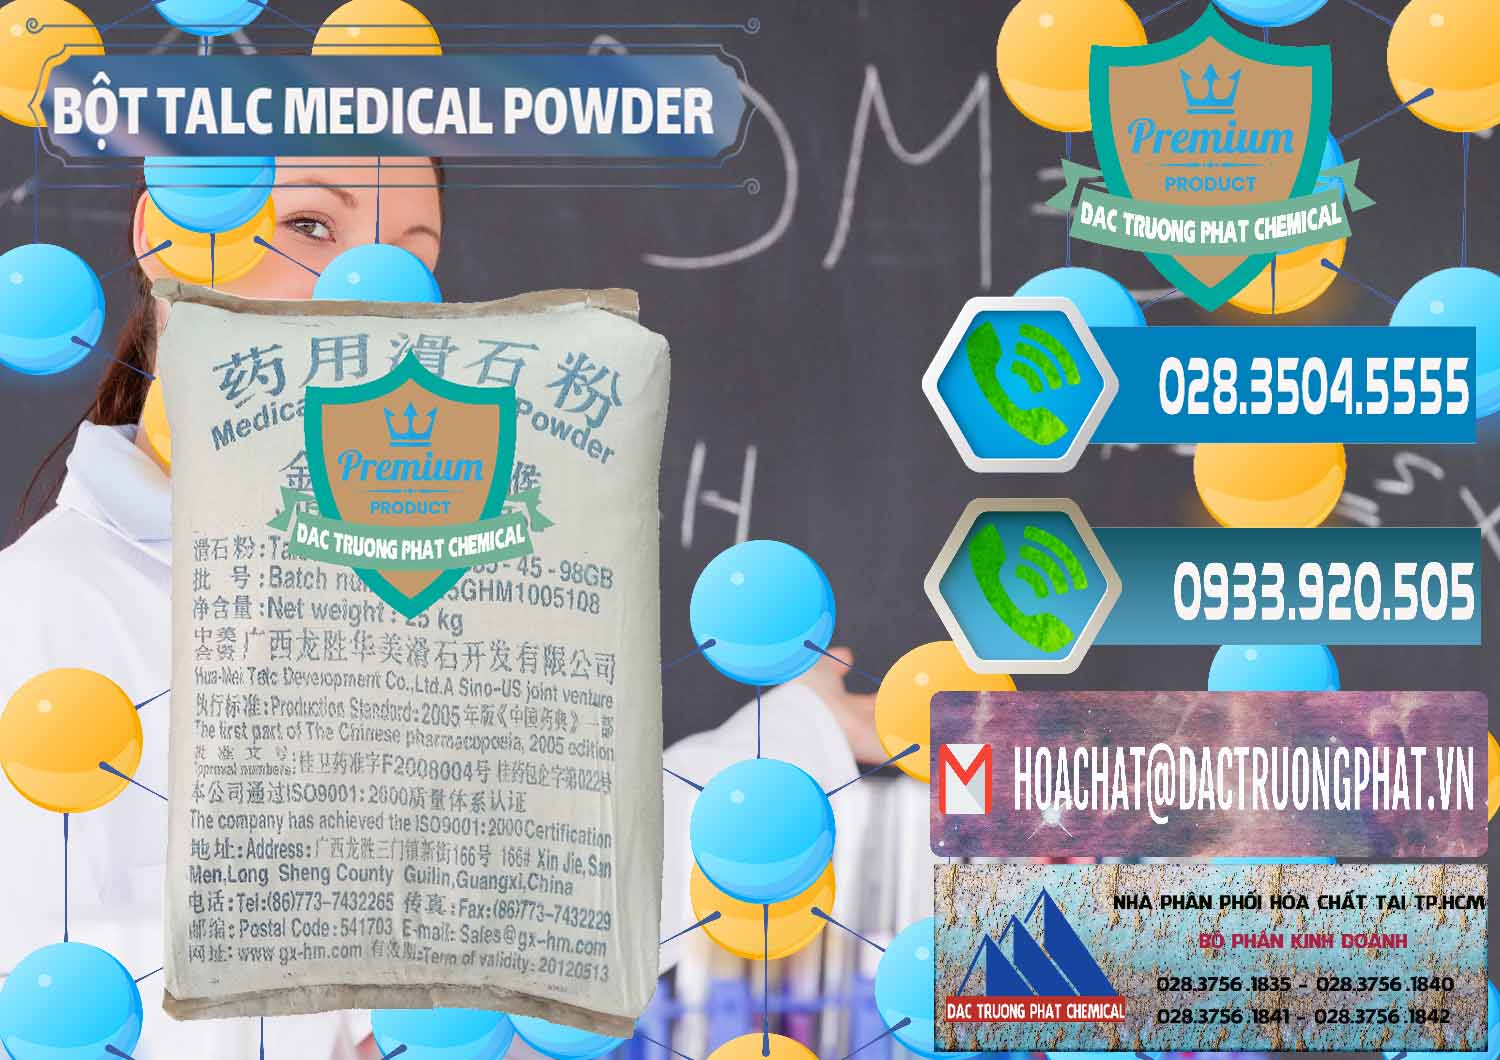 Chuyên cung ứng và bán Bột Talc Medical Powder Trung Quốc China - 0036 - Cty chuyên cung cấp - kinh doanh hóa chất tại TP.HCM - congtyhoachat.net